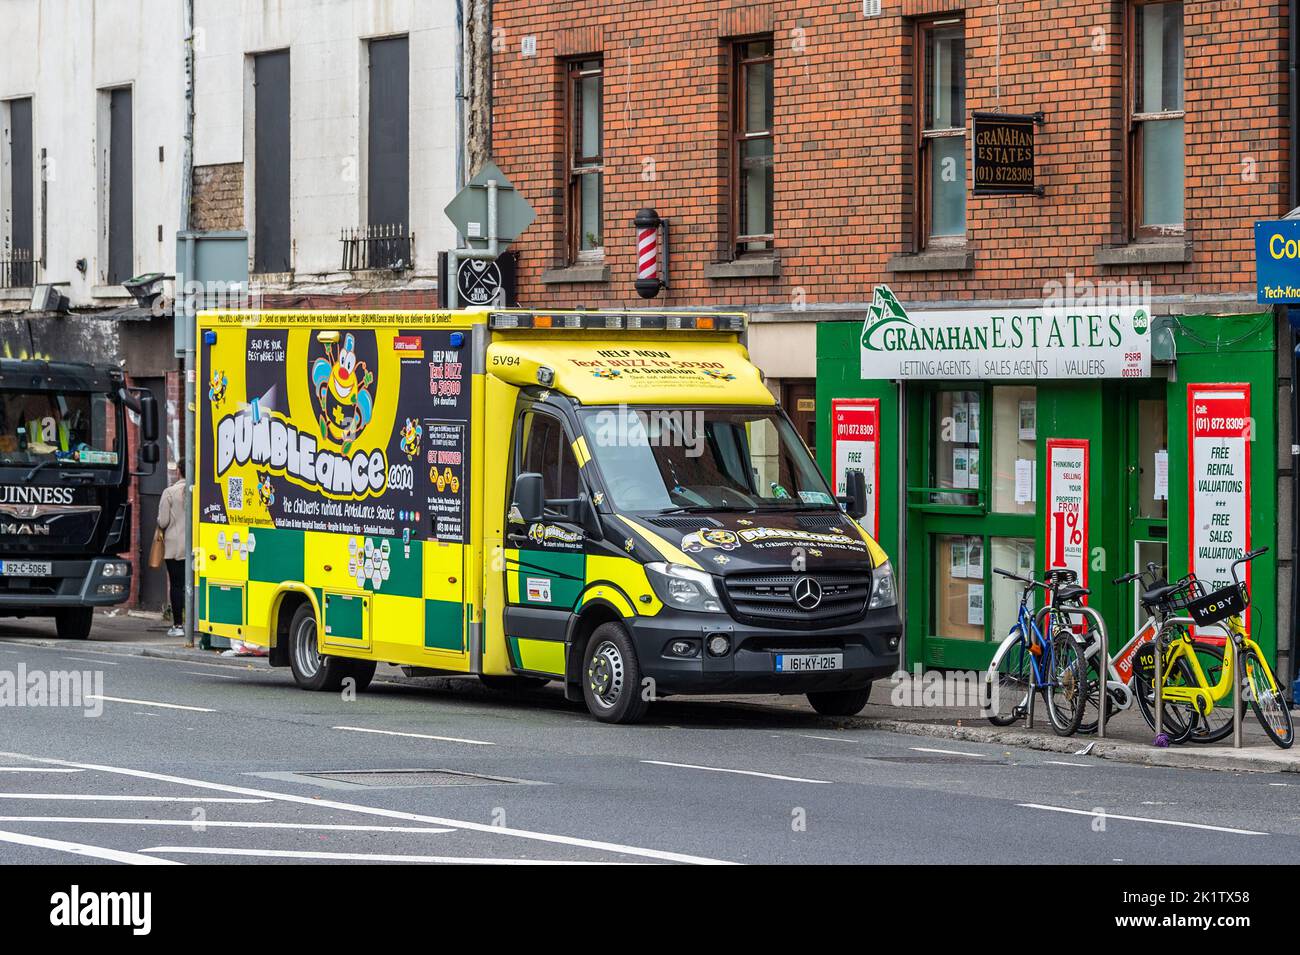 Bumbleance Ambulance est garée dans la rue du centre-ville de Dublin, en Irlande. Banque D'Images